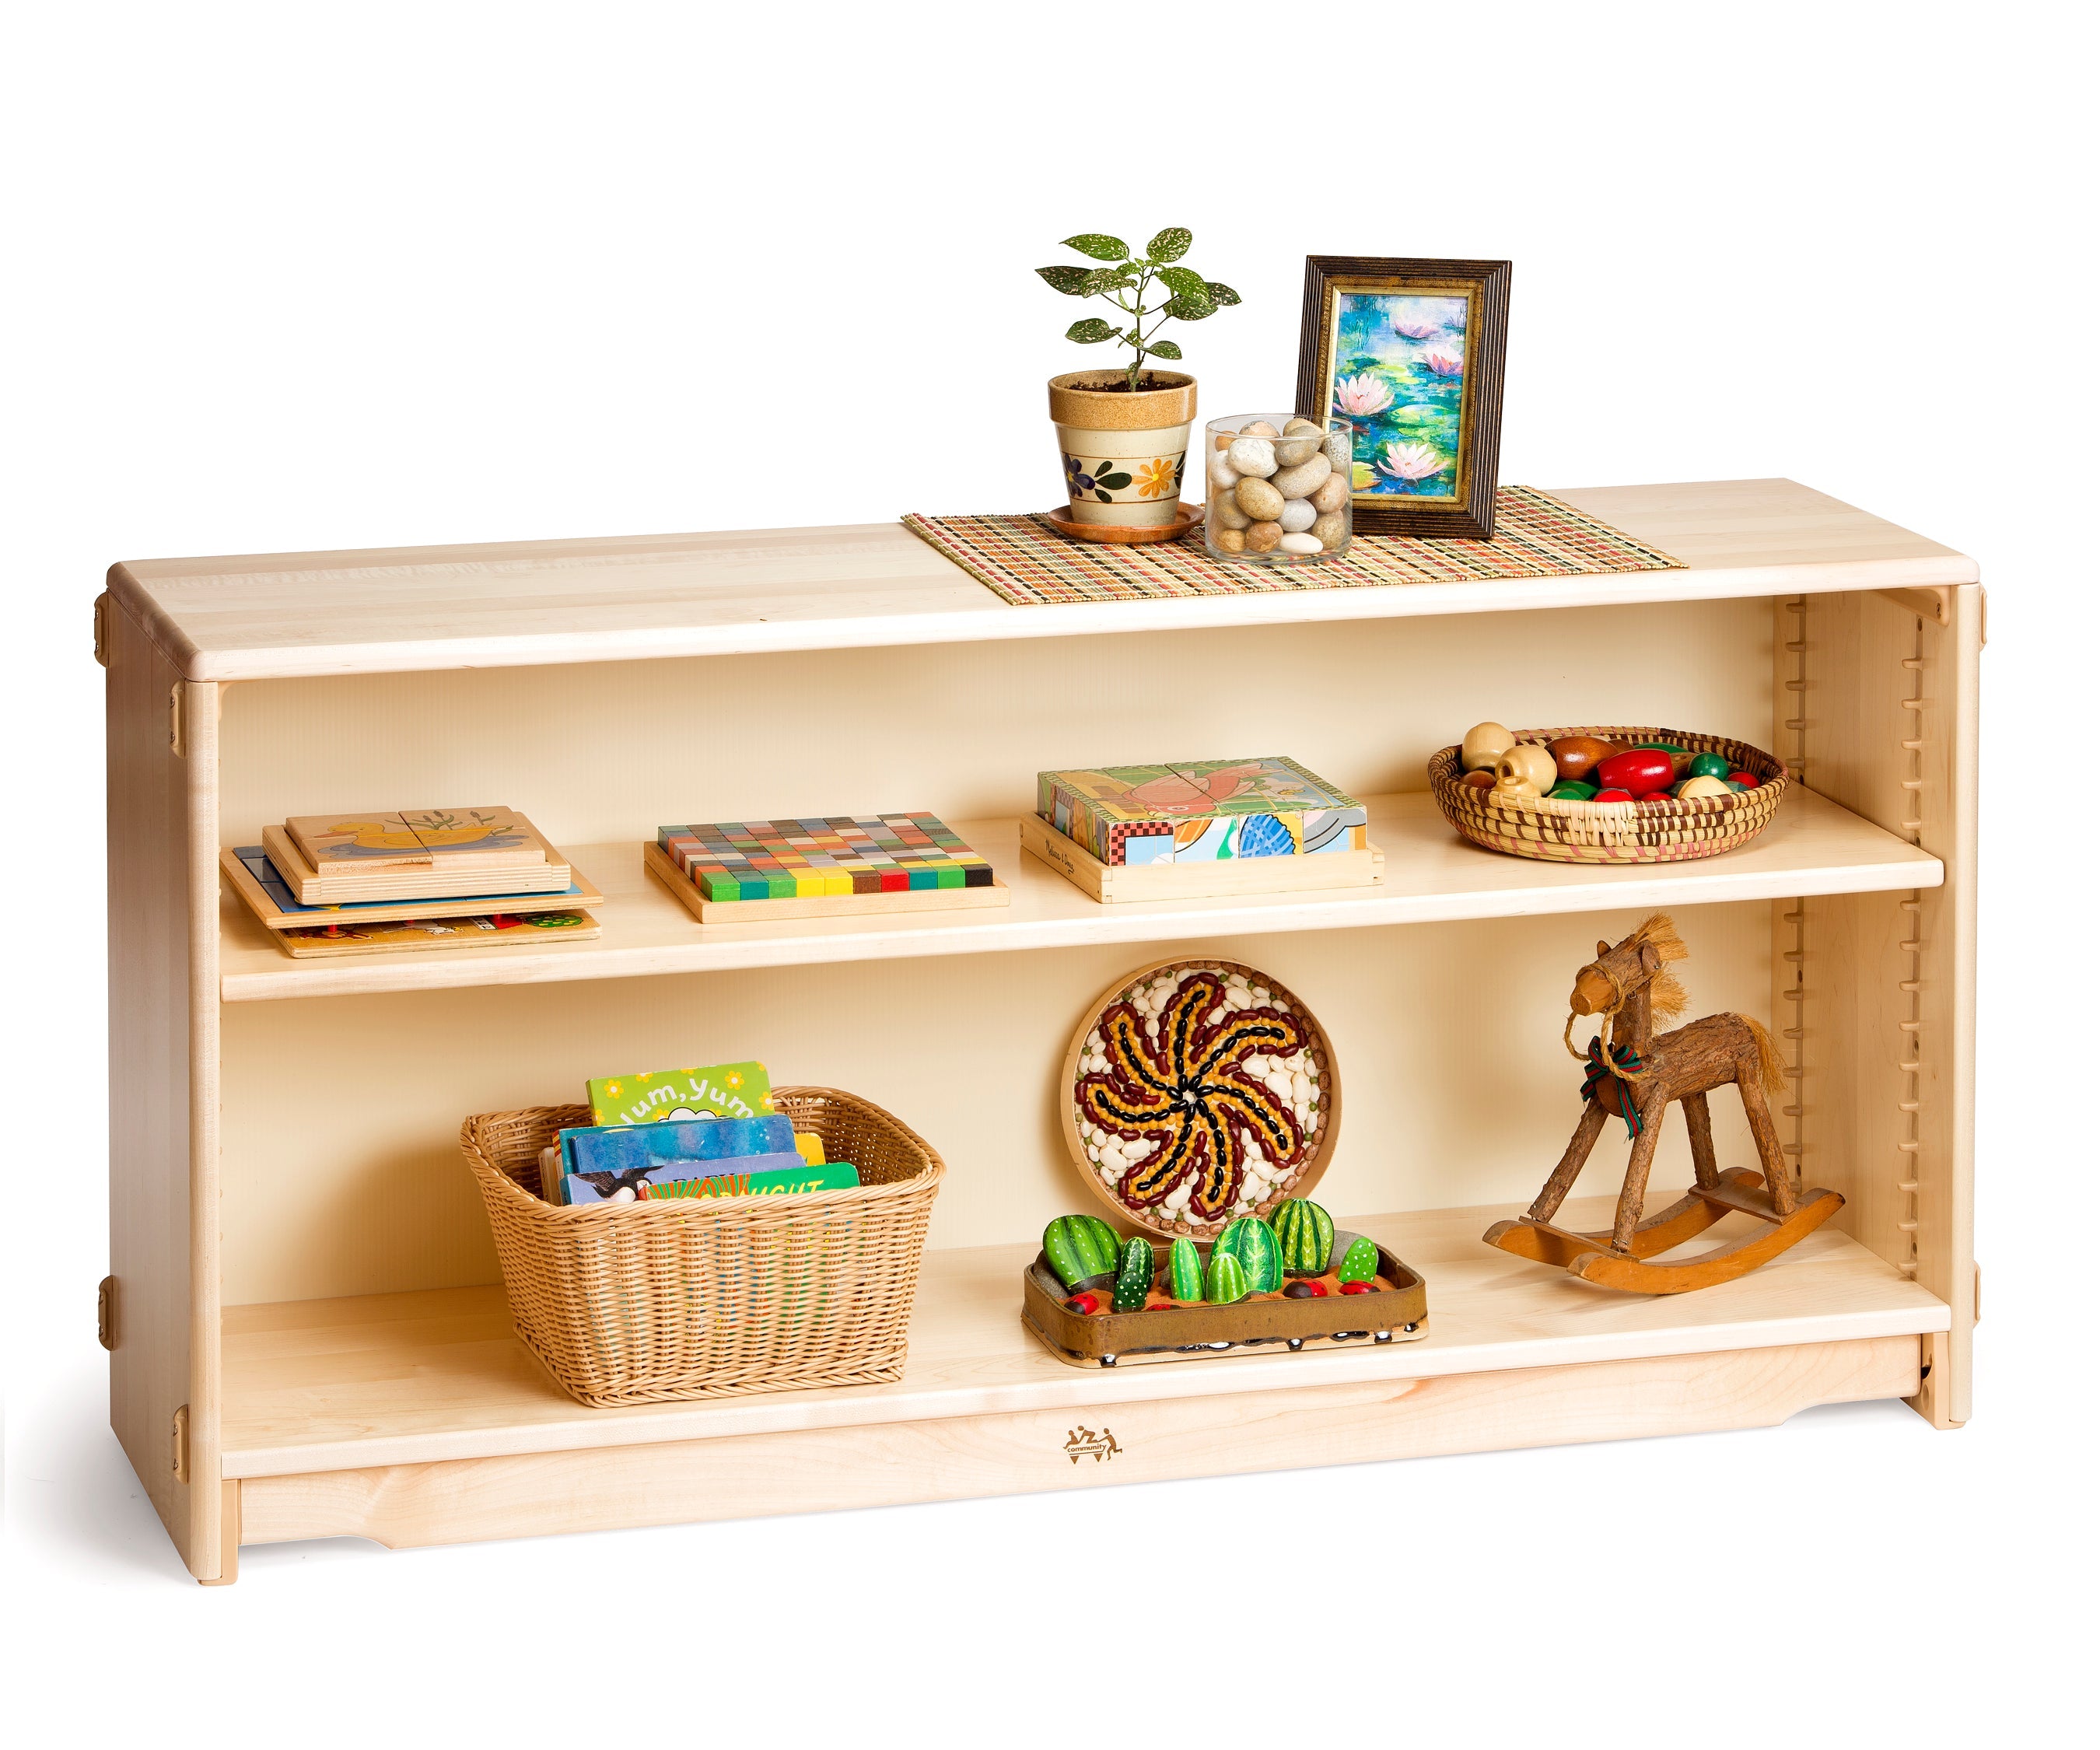 Adjustable Shelf 4' x 24" by Community Playthings - louisekool